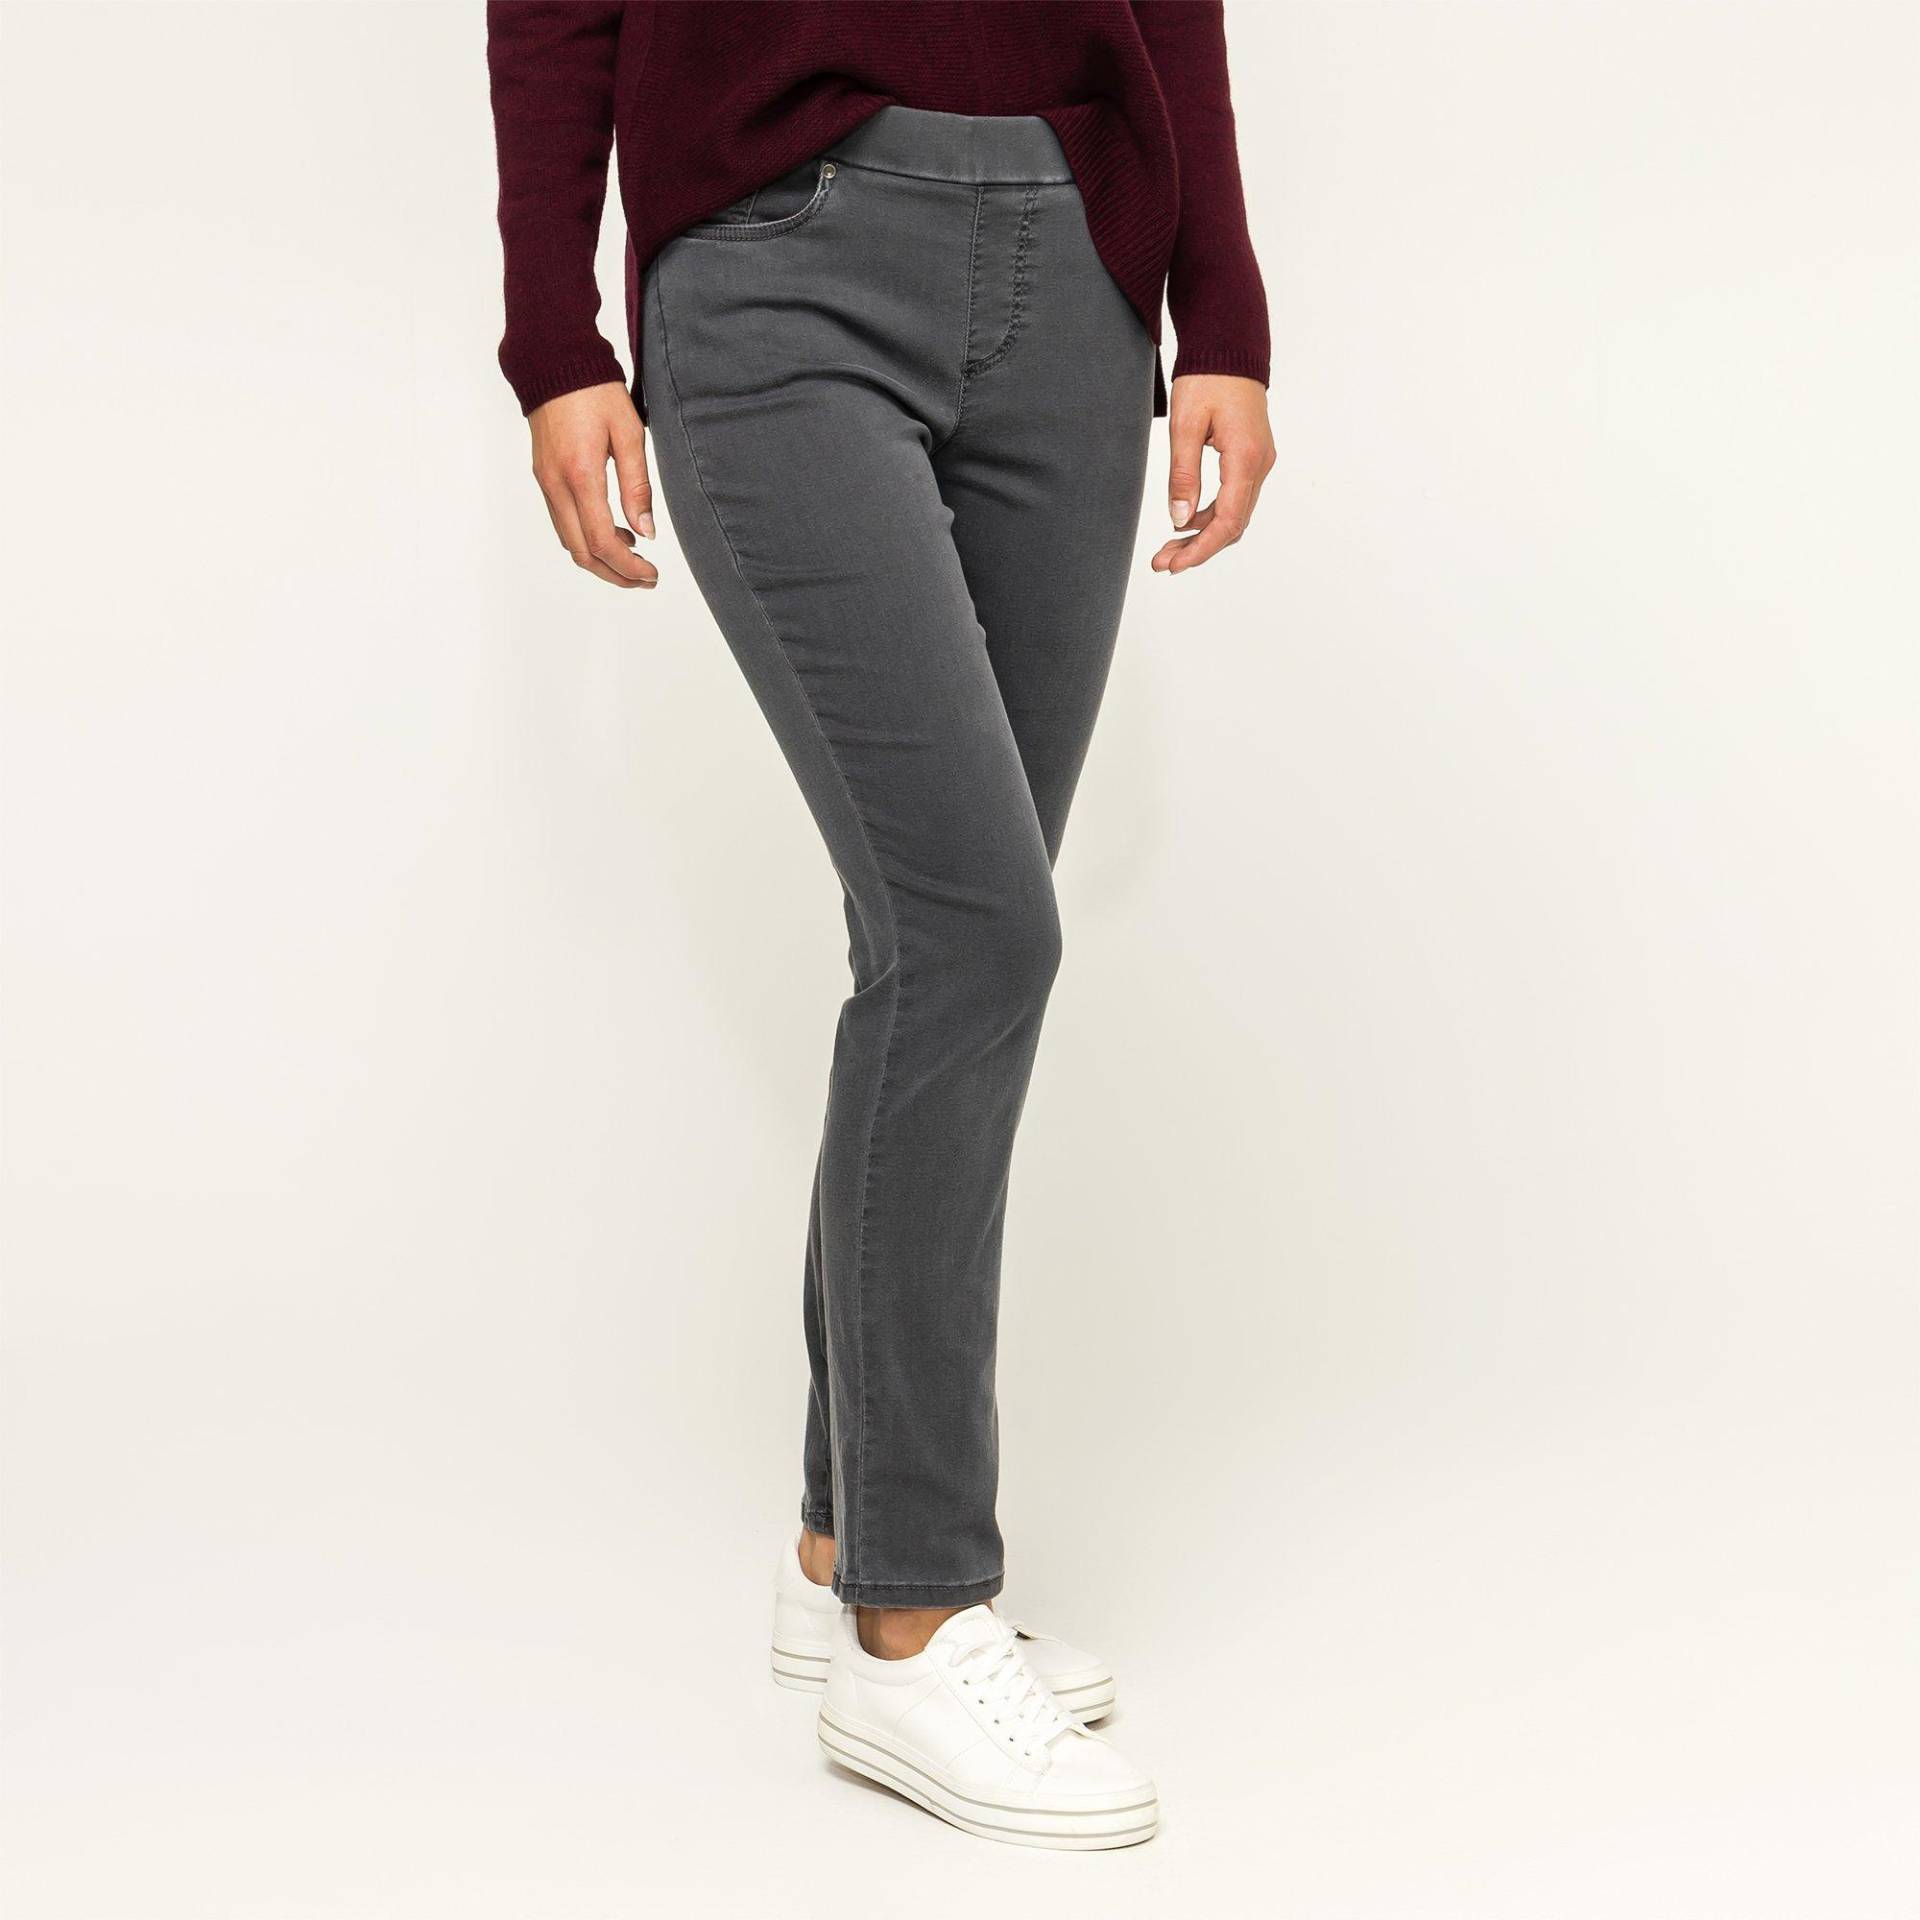 Jeans, Slim Fit Damen Anthrazit 36 von ANNA MONTANA